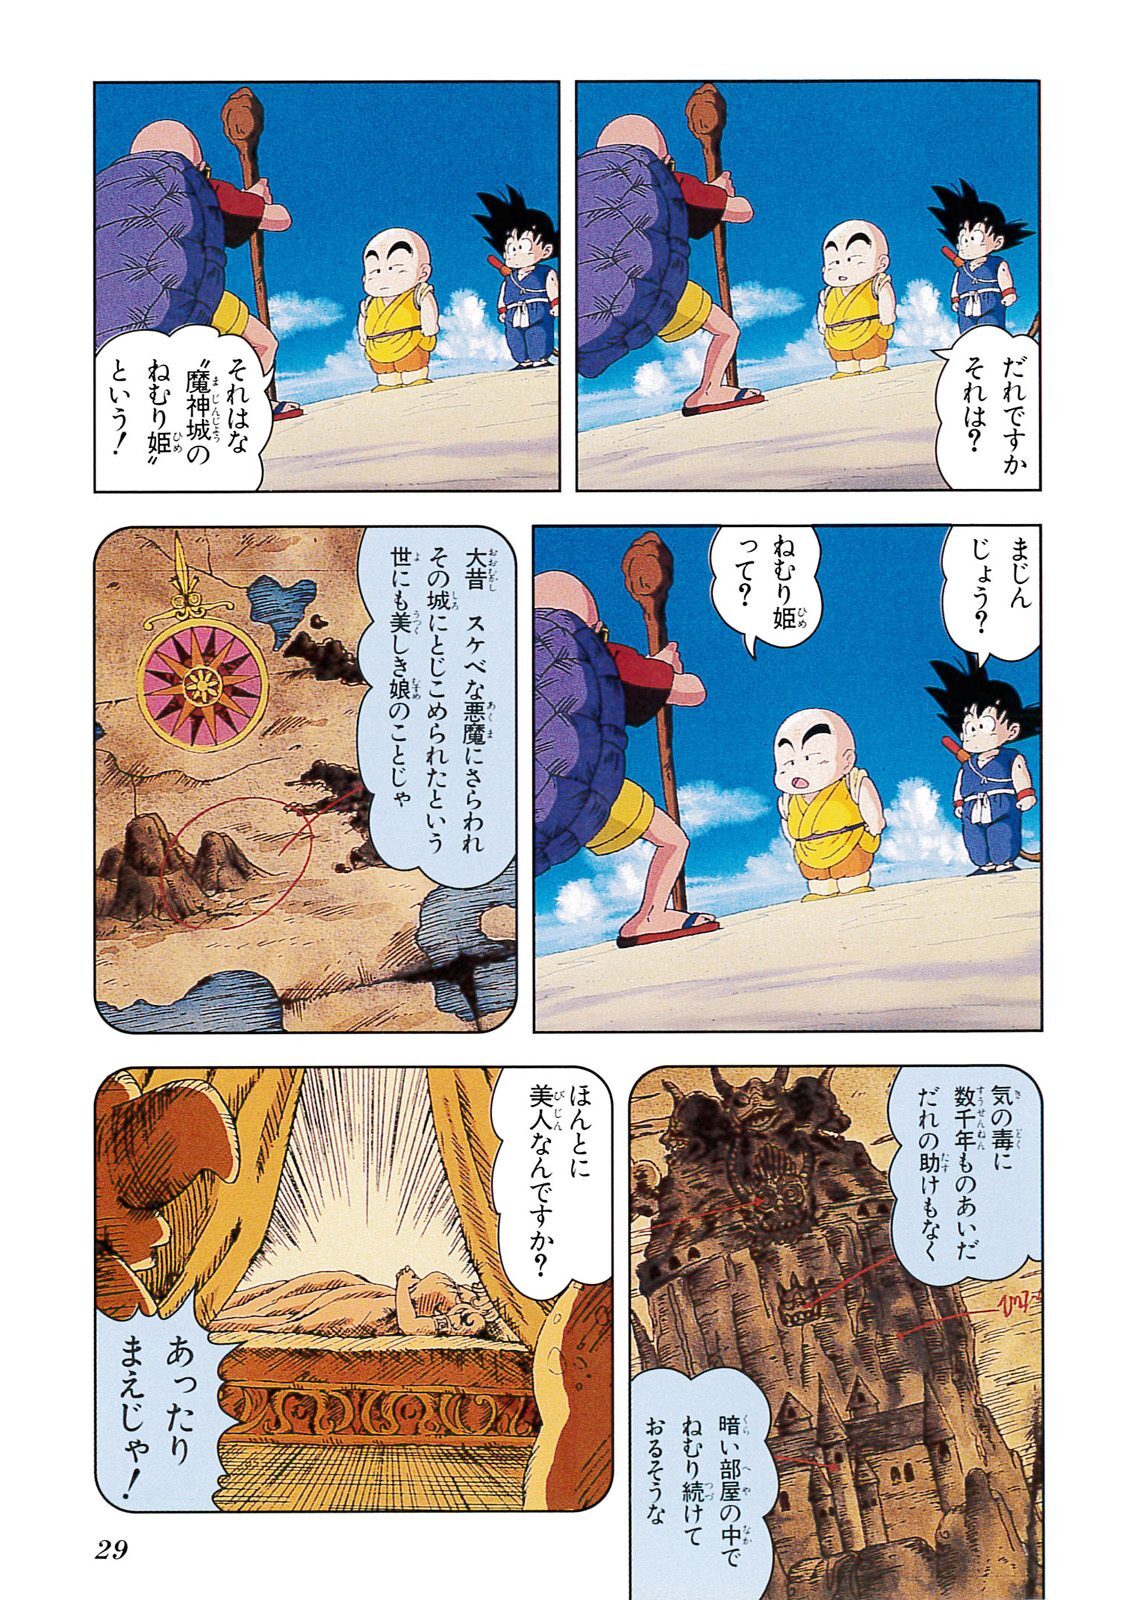 ドラゴンボール アニメコミックス 2 魔神城のねむり姫 Amebaマンガ 旧 読書のお時間です